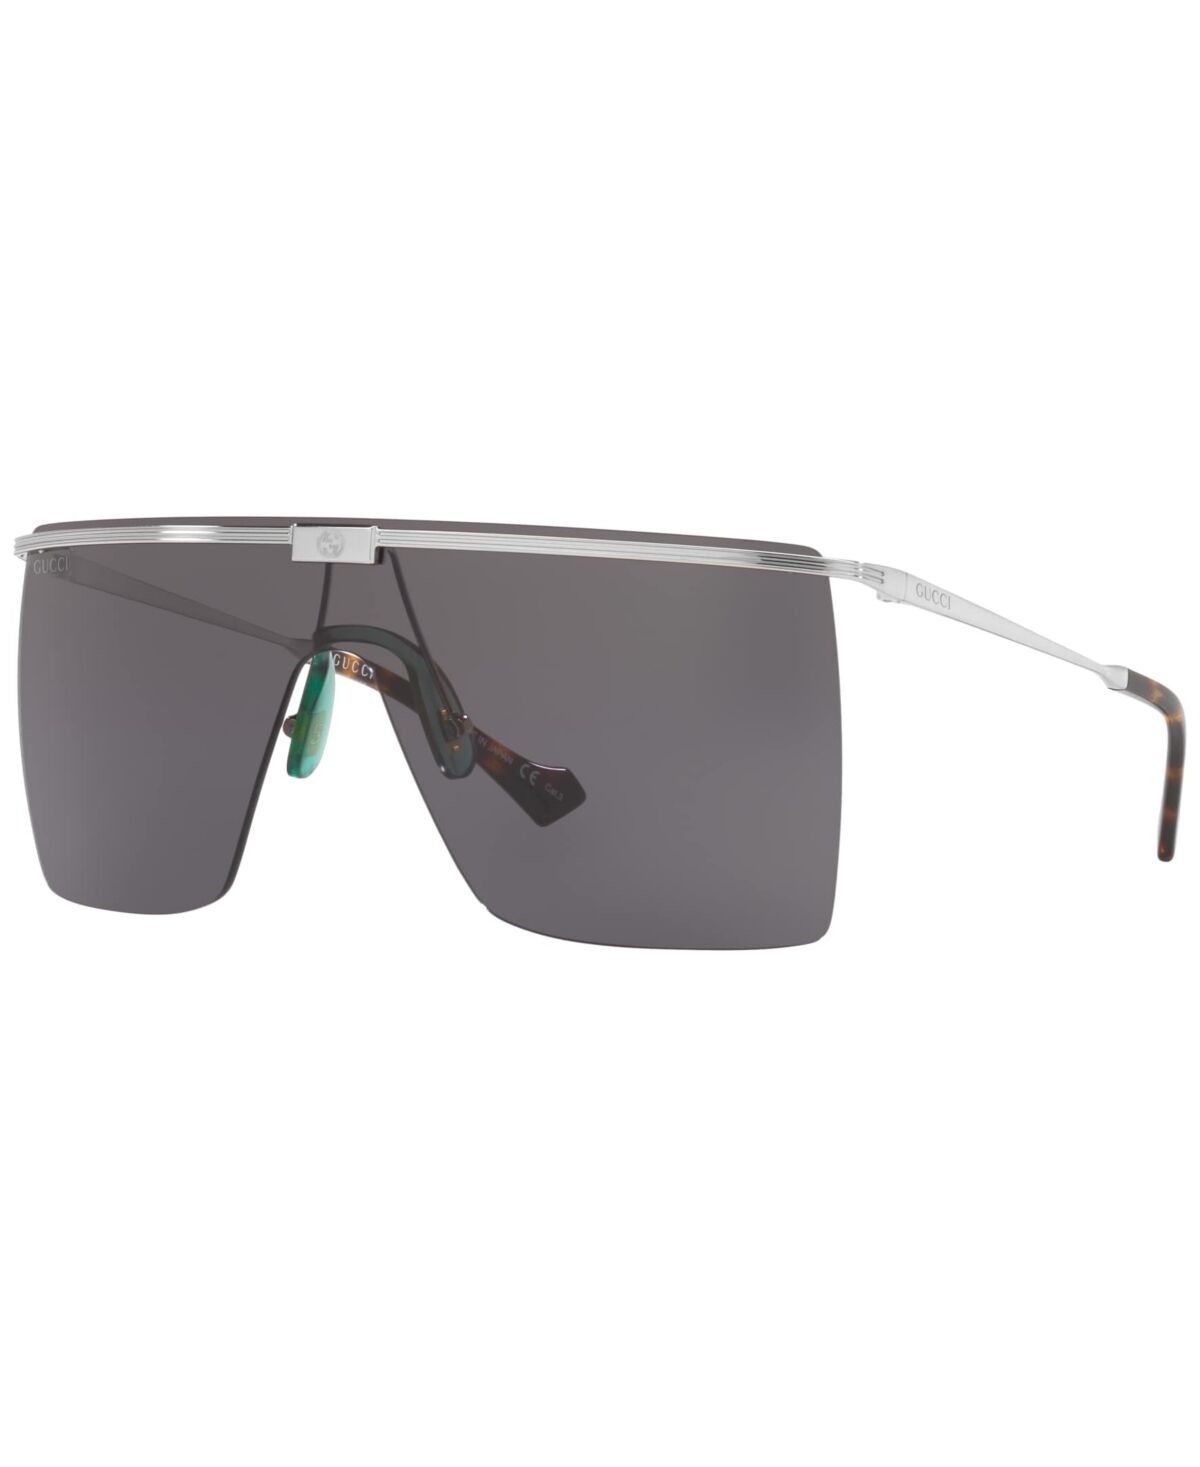 Gucci Men's Sunglasses, GG1096S 90 - Silver-Tone